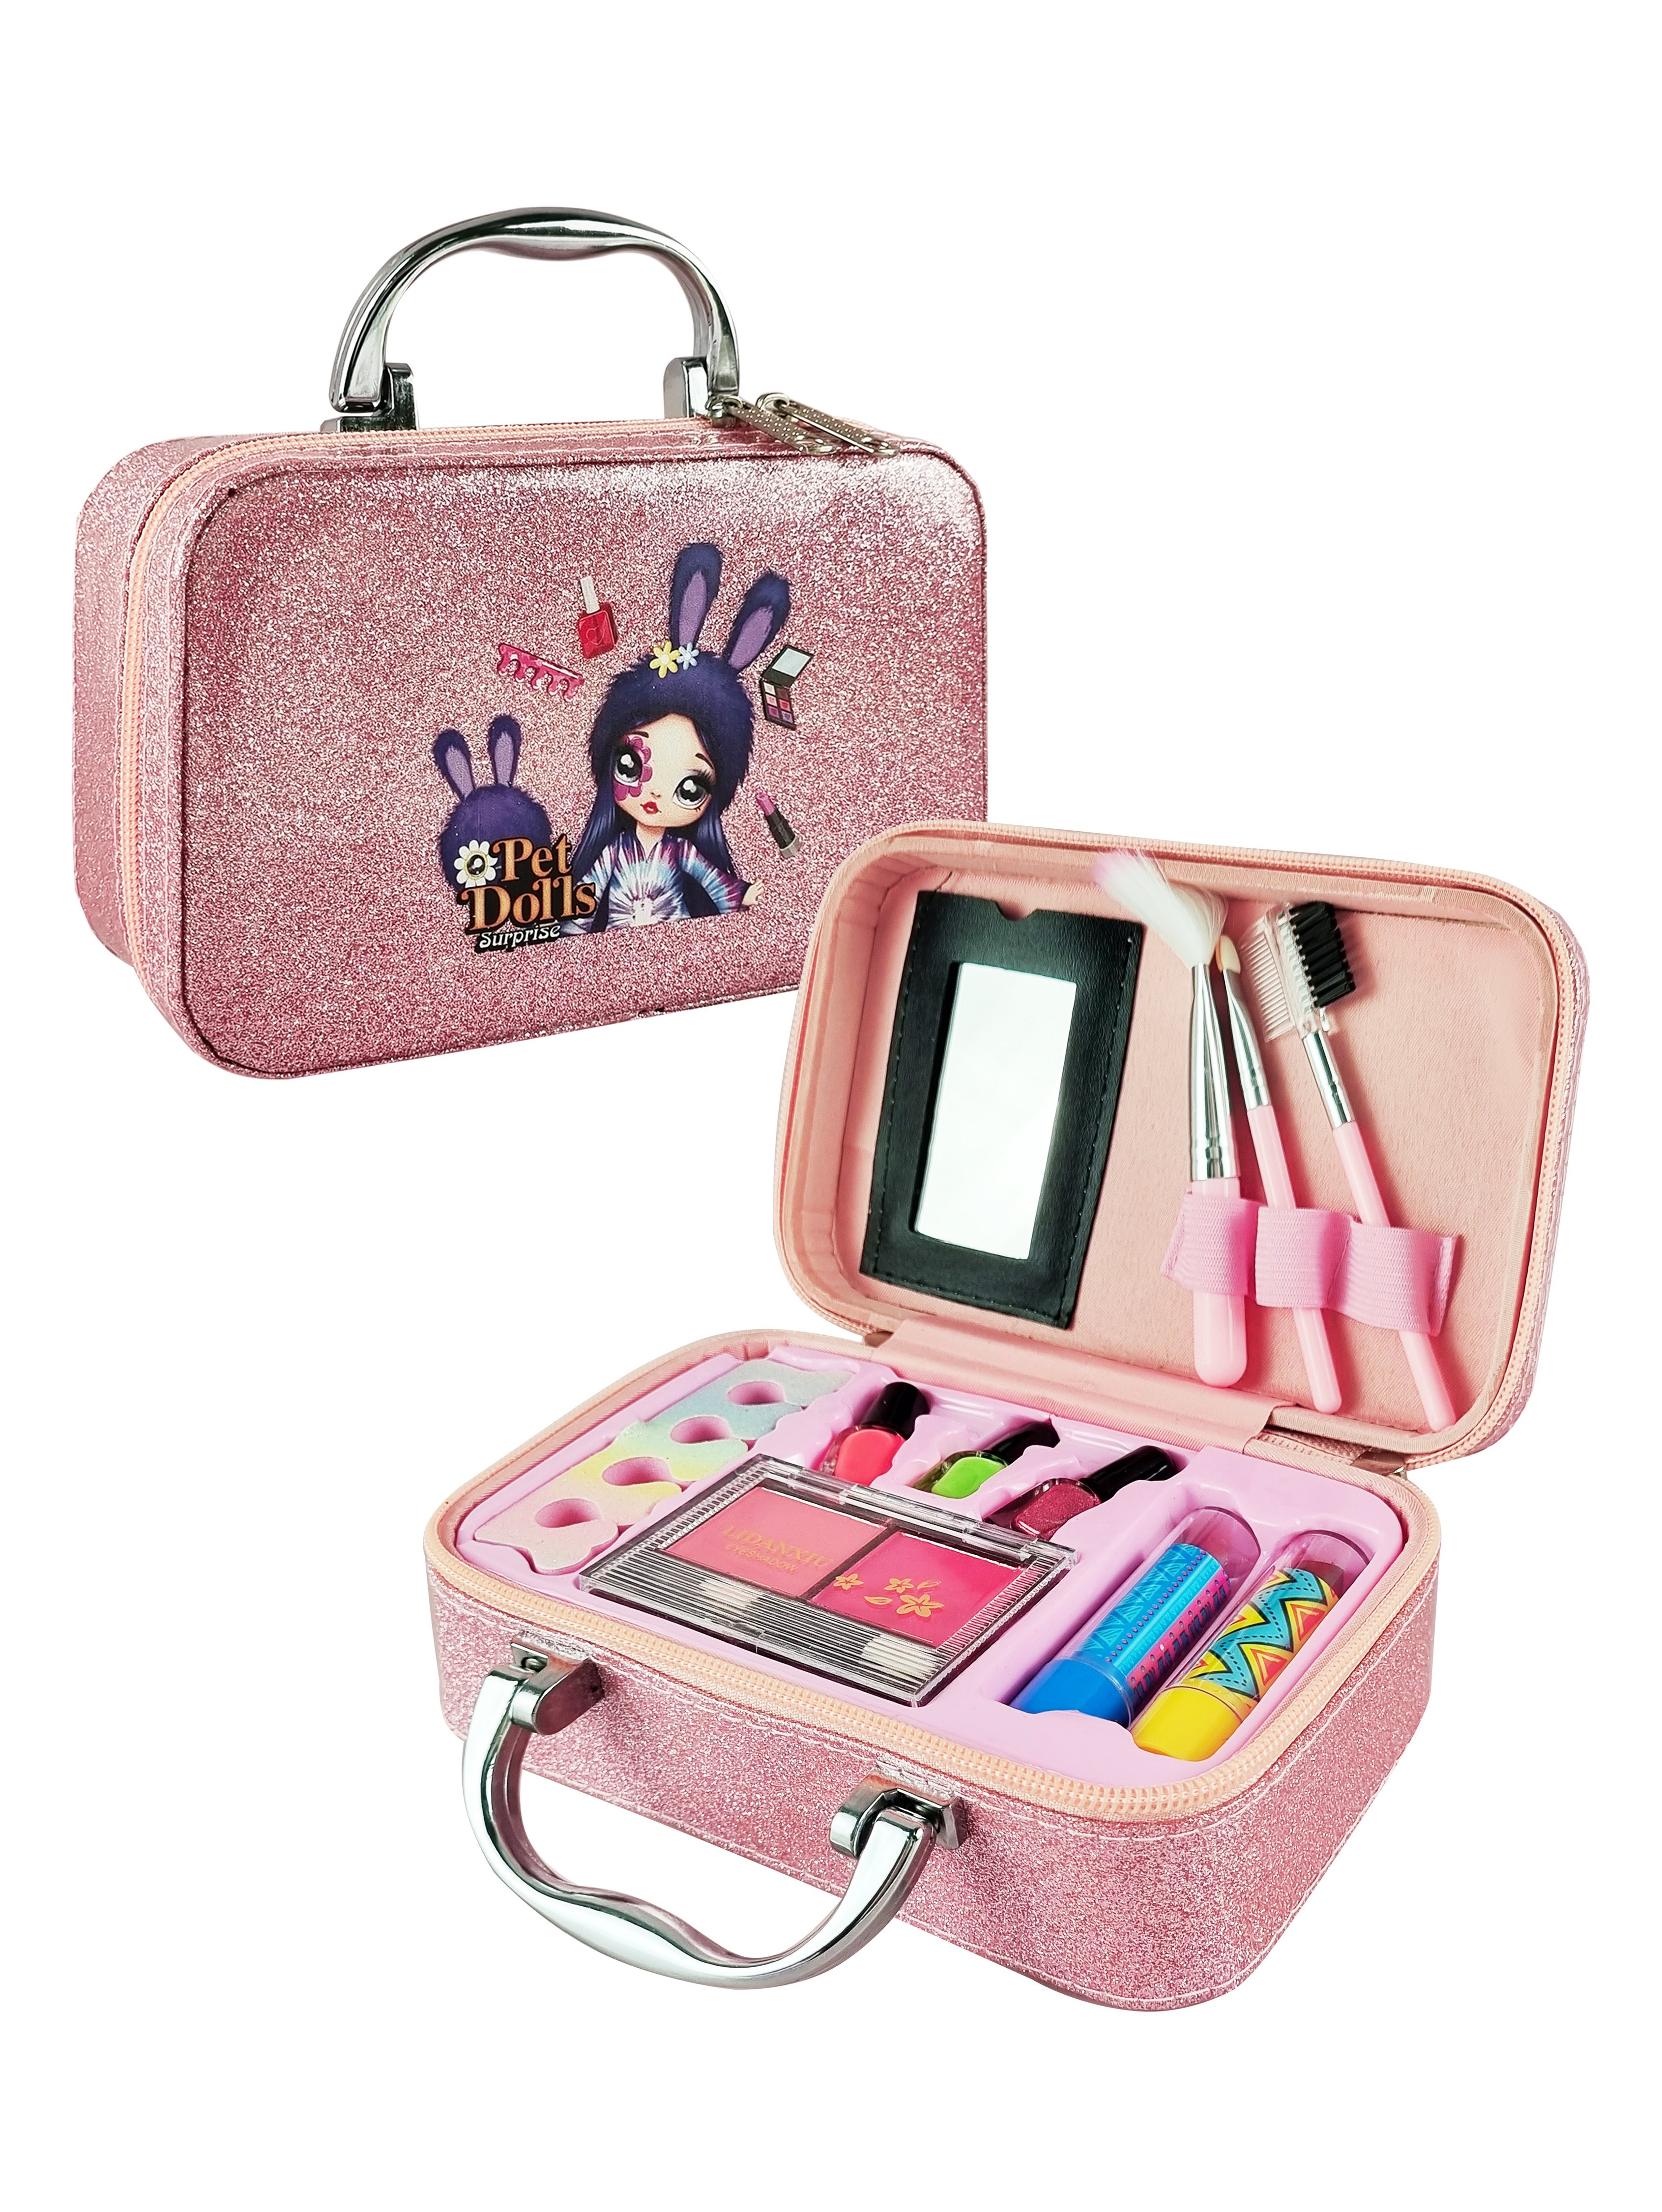 Детская декоративная косметика PetDolls, 12 предметов, розовый чемоданчик 5-905-2 прекрасная косметика из дешевых аптечных средств